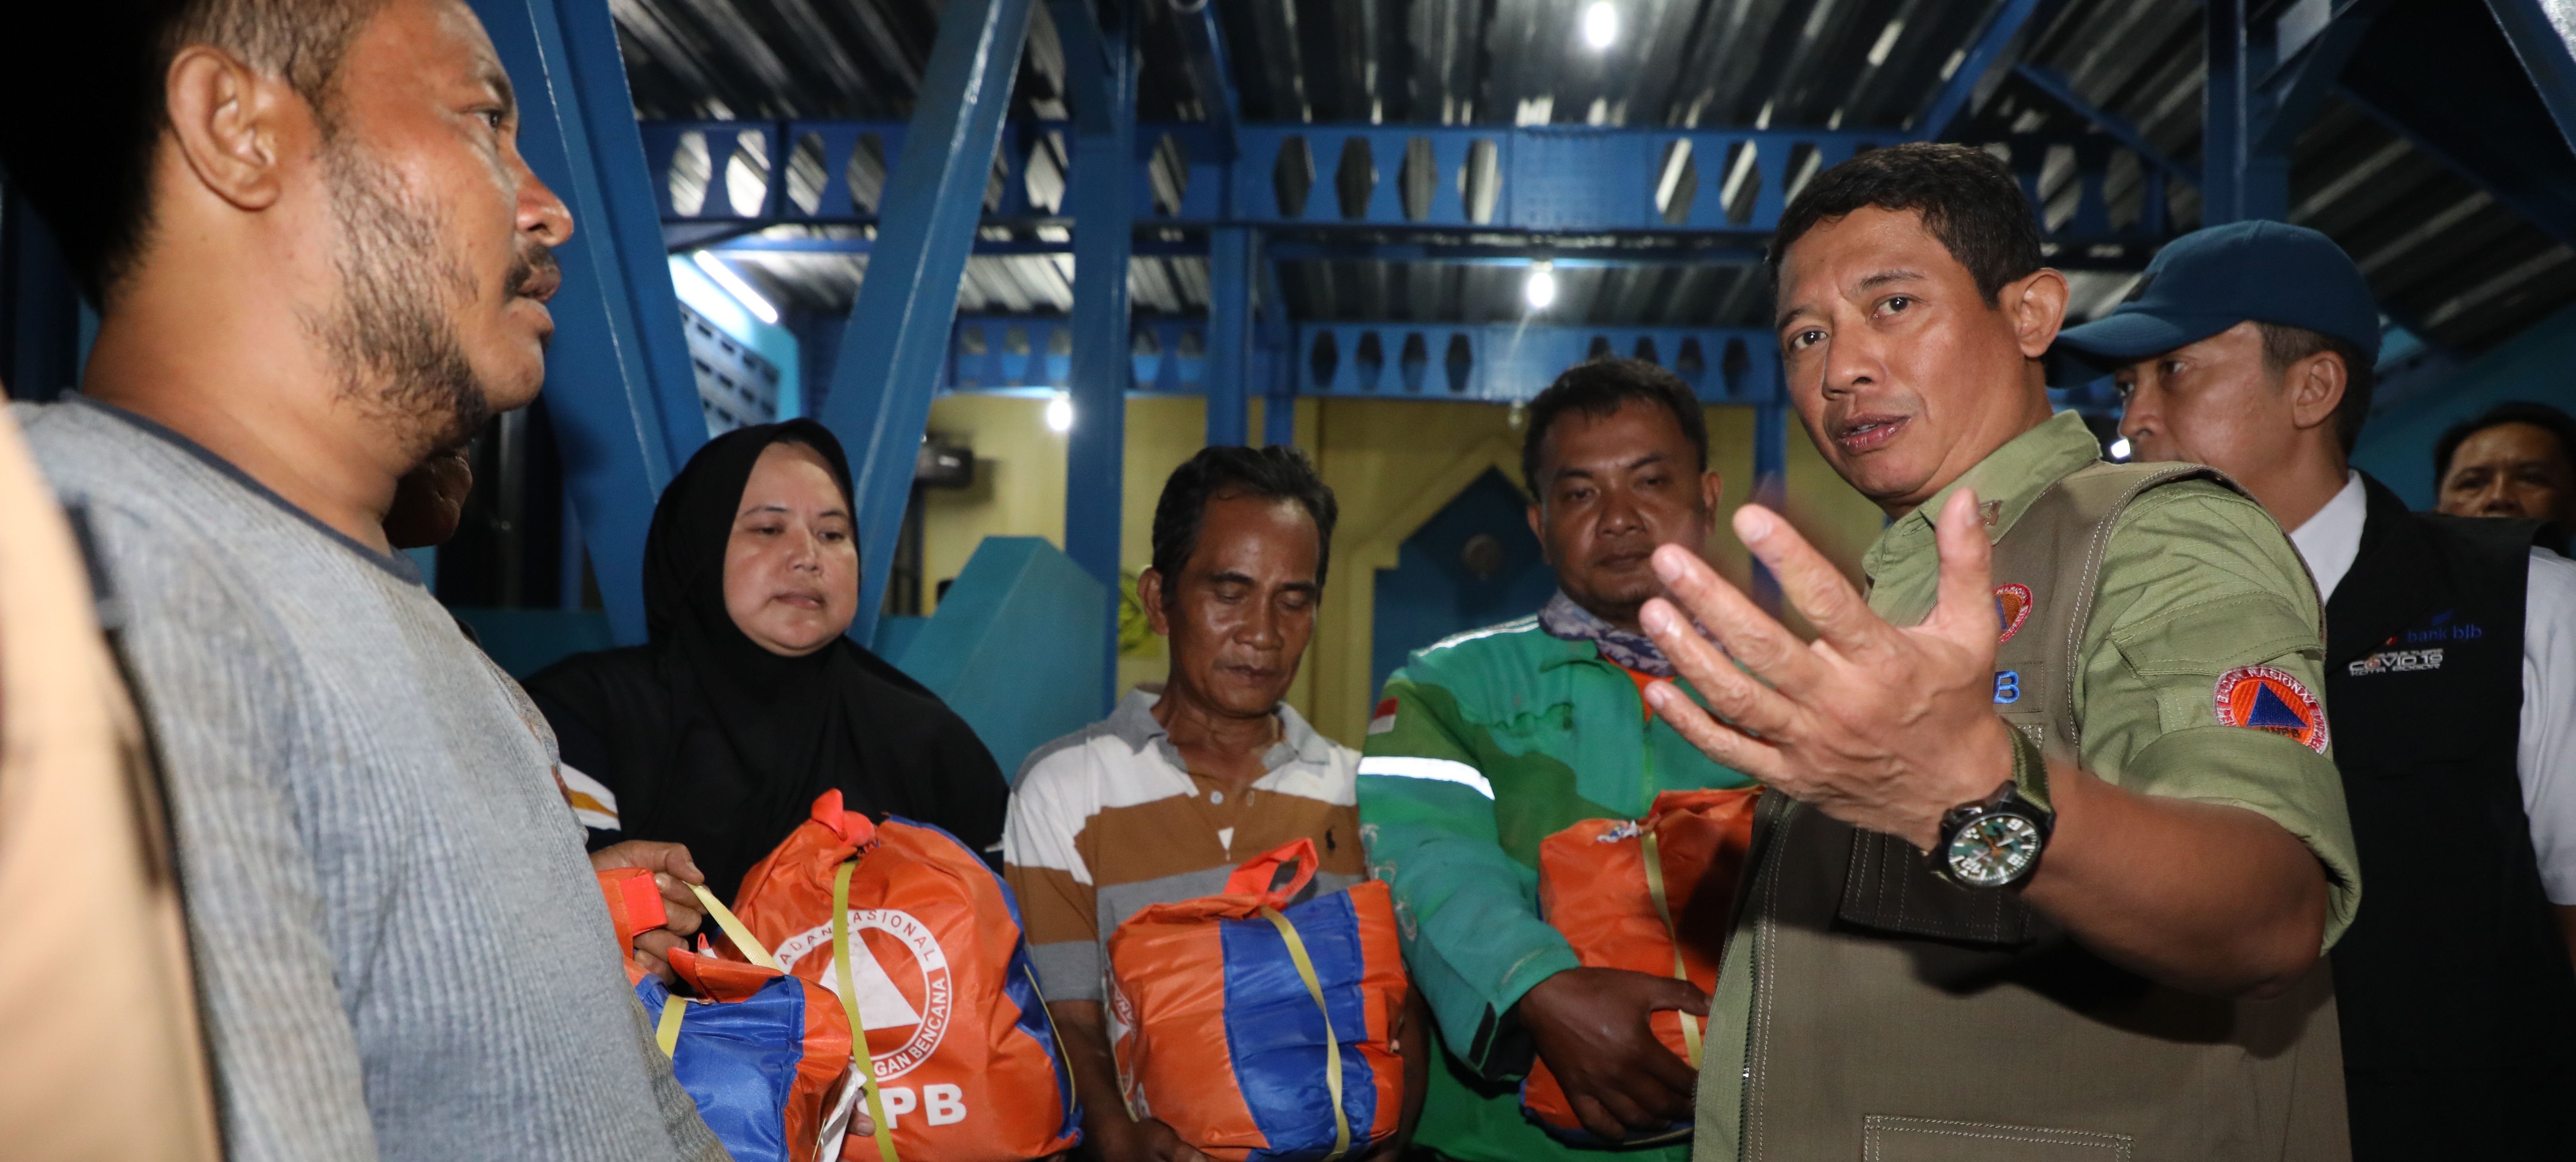 Tinjau Lokasi Tanah Longsor di Bogor, Kepala BNPB Serahkan DSP 500 Juta dan Akan Relokasi Warga